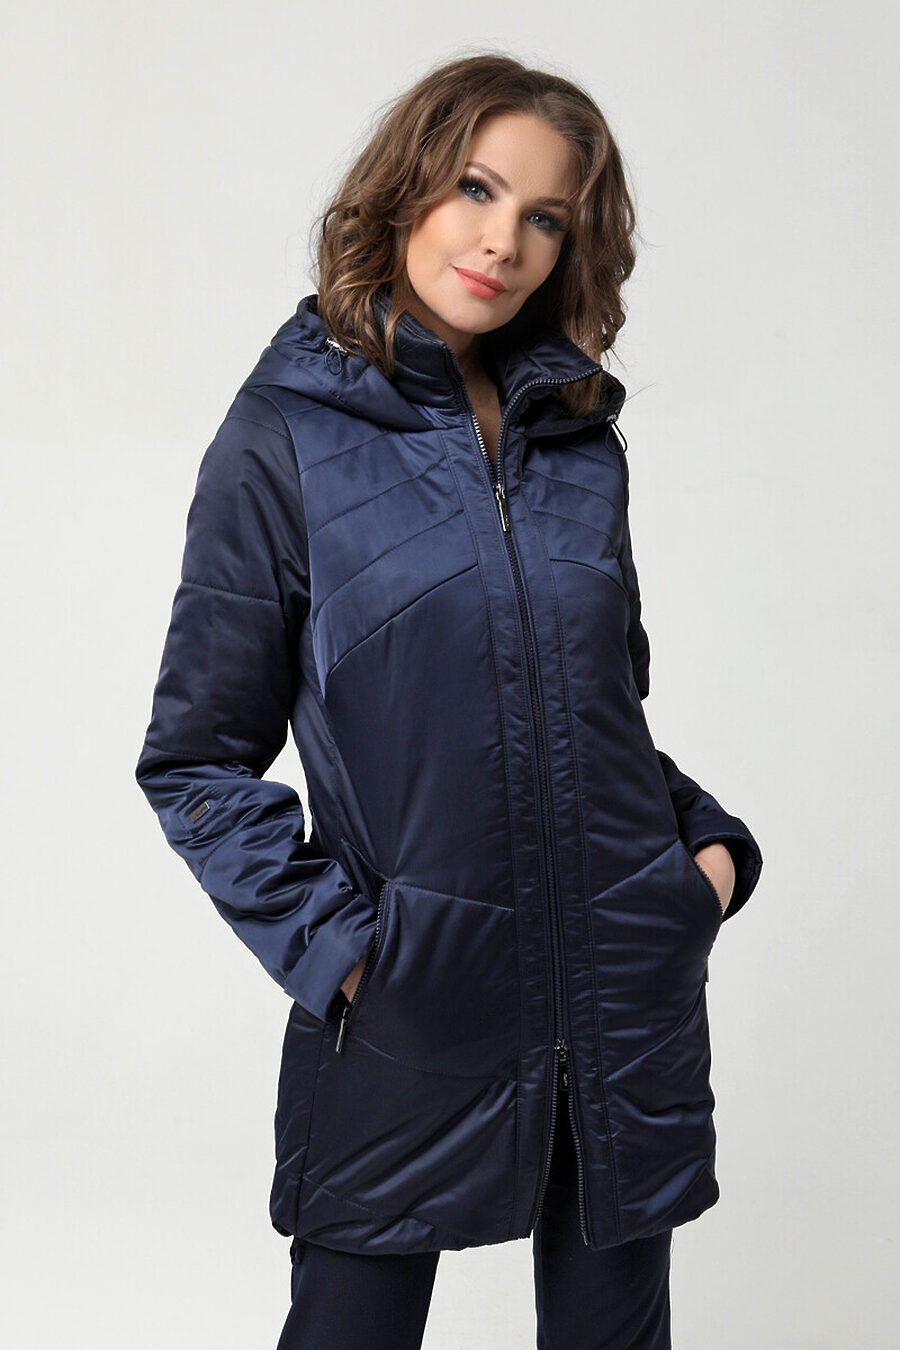 Куртка DIWAY (684838), купить в Moyo.moda